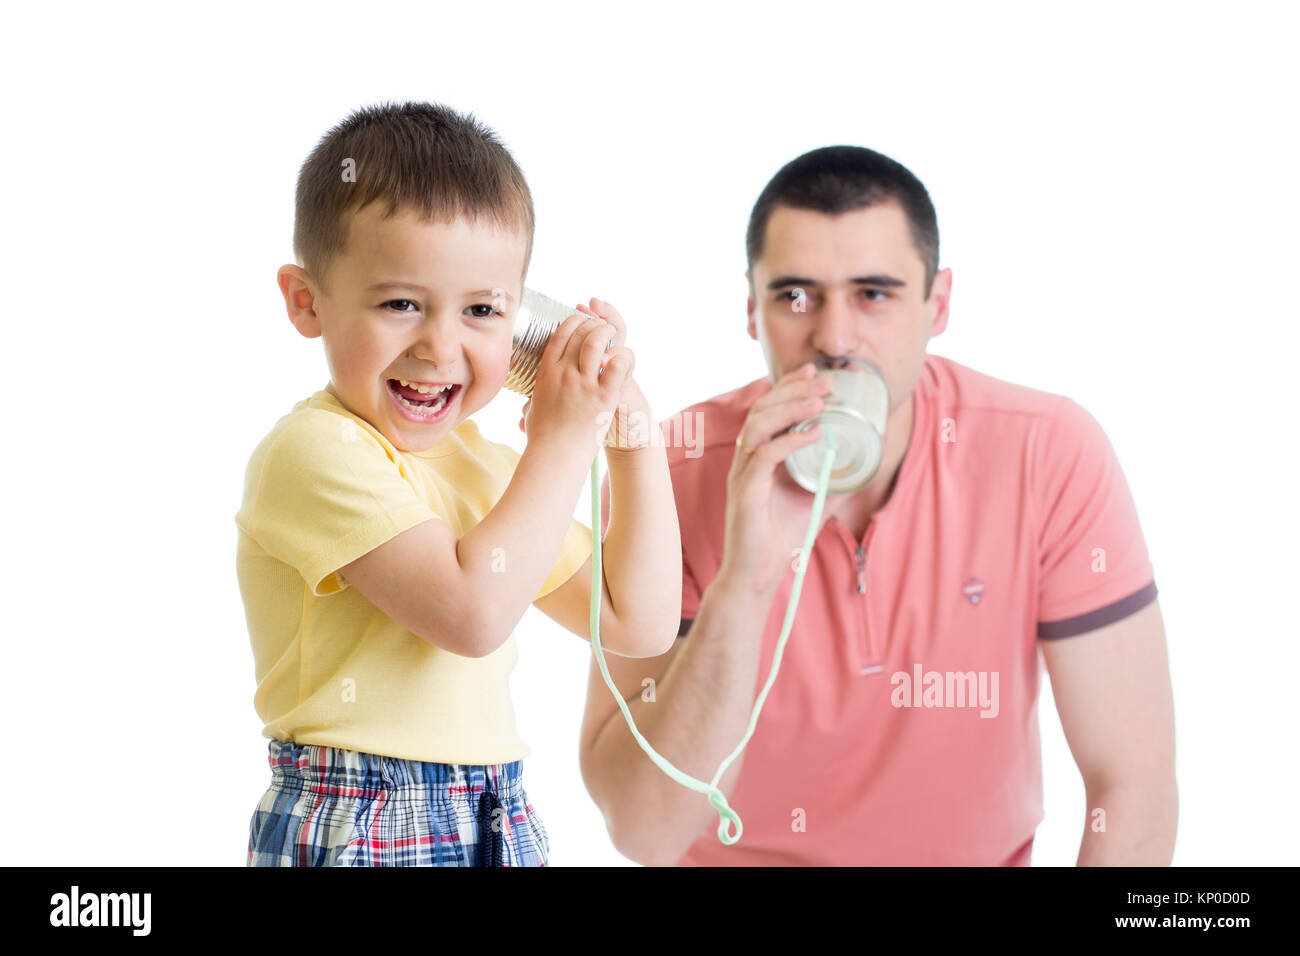 Bambino ragazzo e papà avente una telefonata con le lattine di alluminio Foto Stock